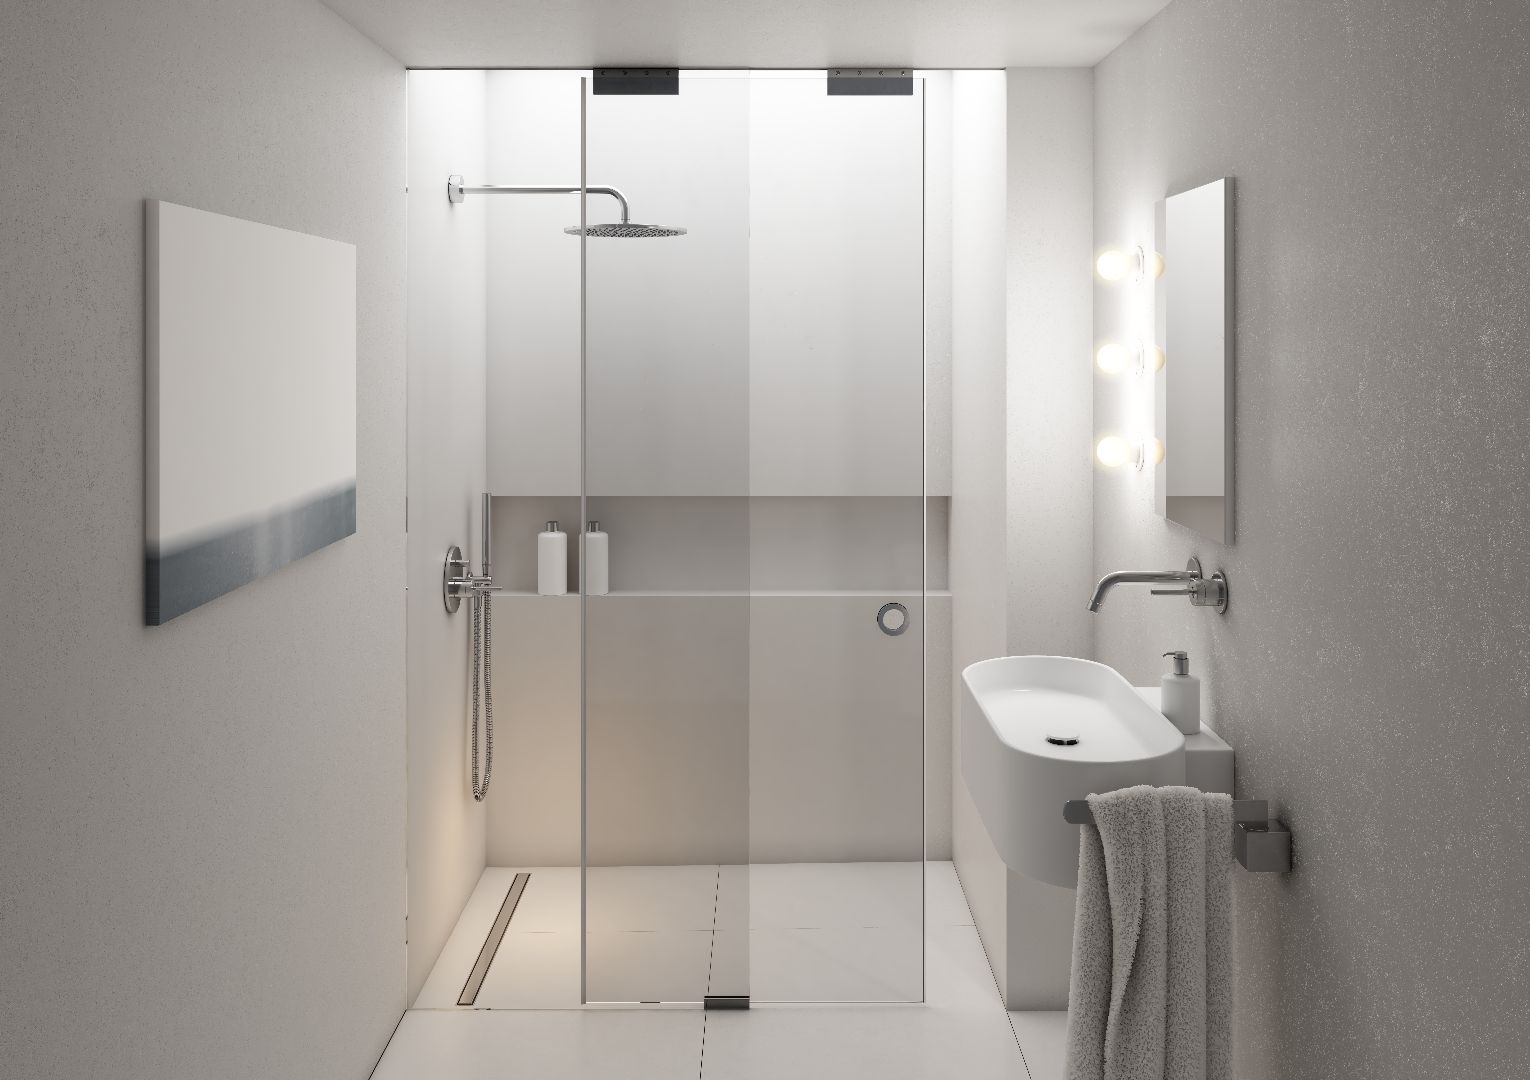 W minimalistycznej łazience postawmy na kolory sprzyjające wyciszeniu – w tym celu warto wybrać biel, beż, jasną szarość. Fot. Schedpol